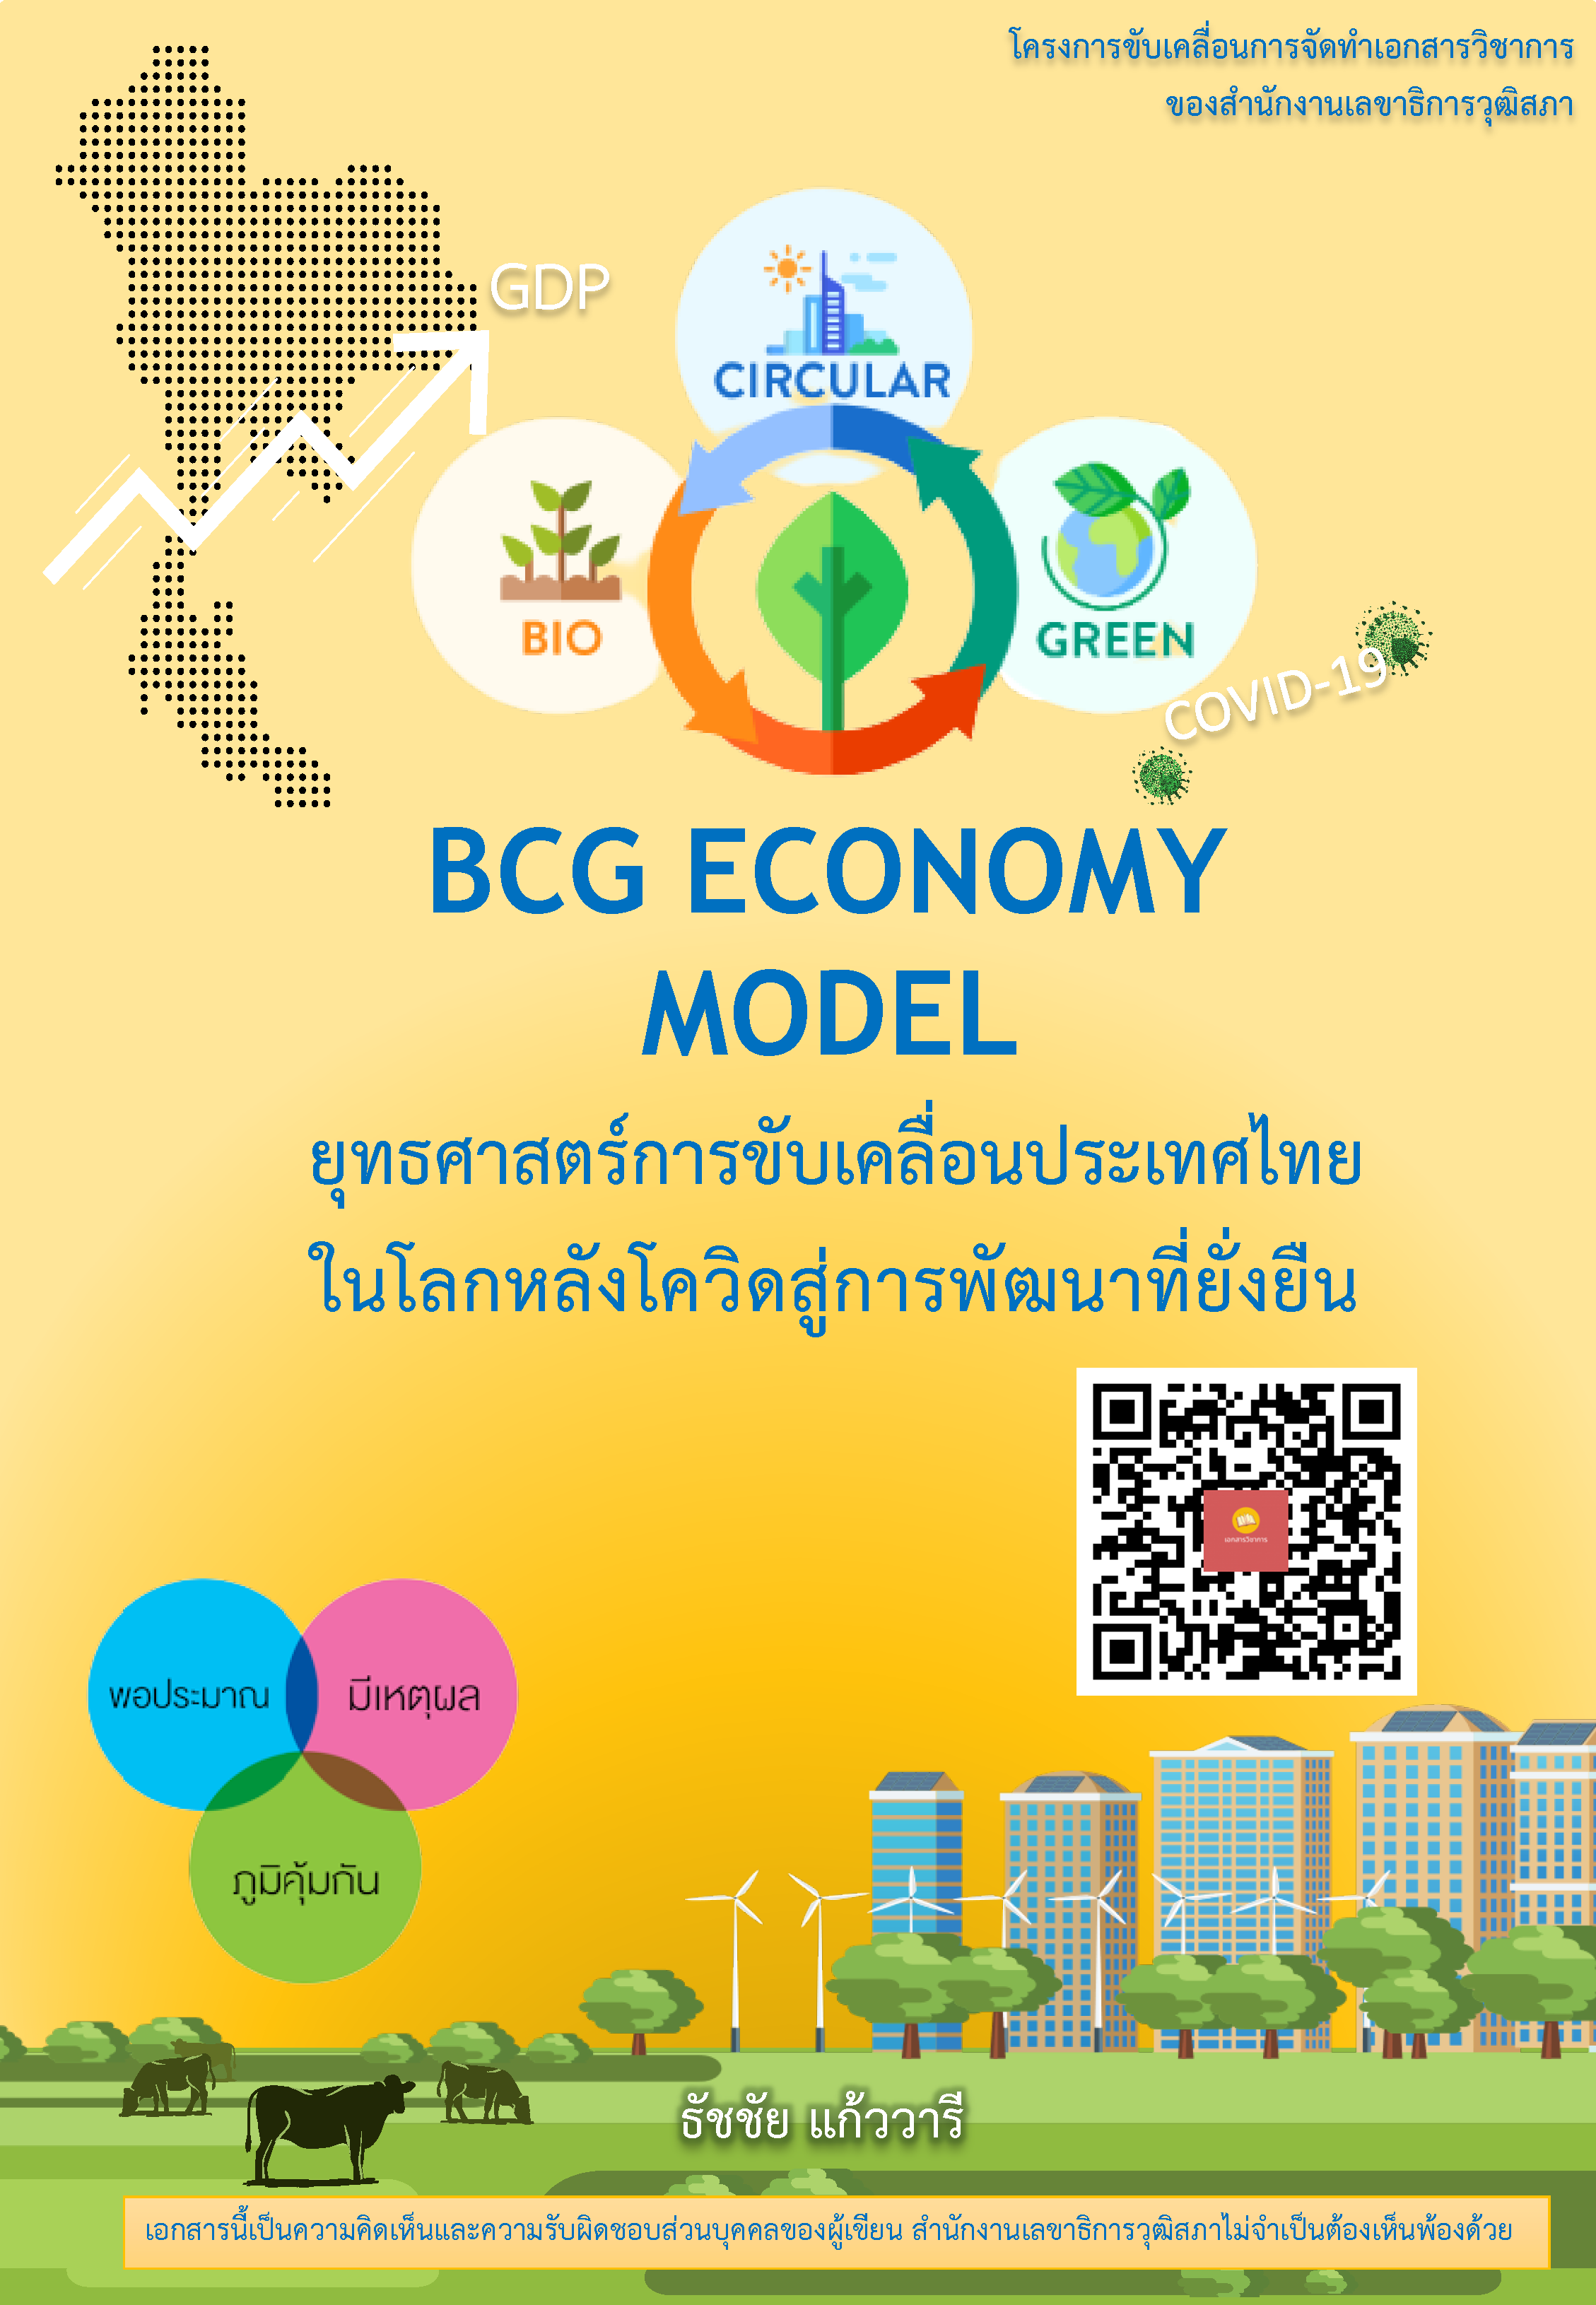 บทความทางวิชาการ เรื่อง "BCG Economy Model : ยุทธศาสร์การขับเคลื่อนประเทศไทย ในดลกหลังโควิดสู่การพัฒนาที่ยั่งยืน"